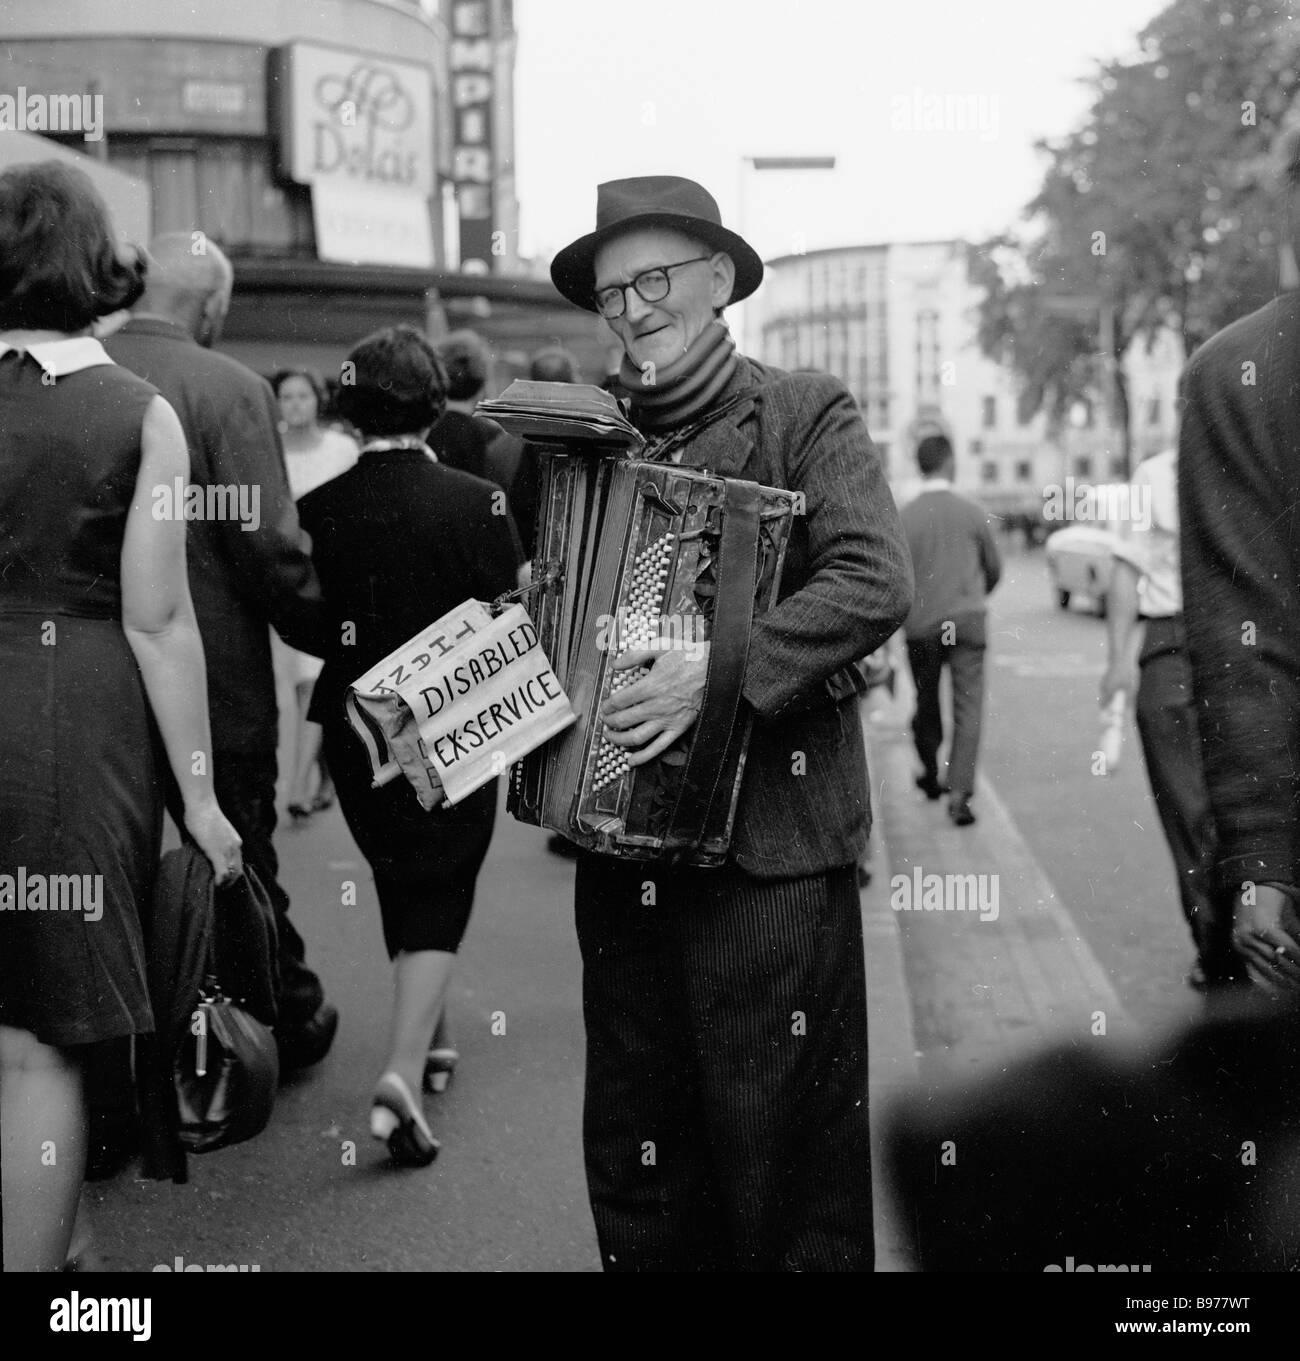 Vecchio Street busker, 1950s. Un ex-serviceman o soldato disabile che gioca una scatola di squeeze in strada a Leicester Square, Londra, Inghilterra, Regno Unito. Foto Stock